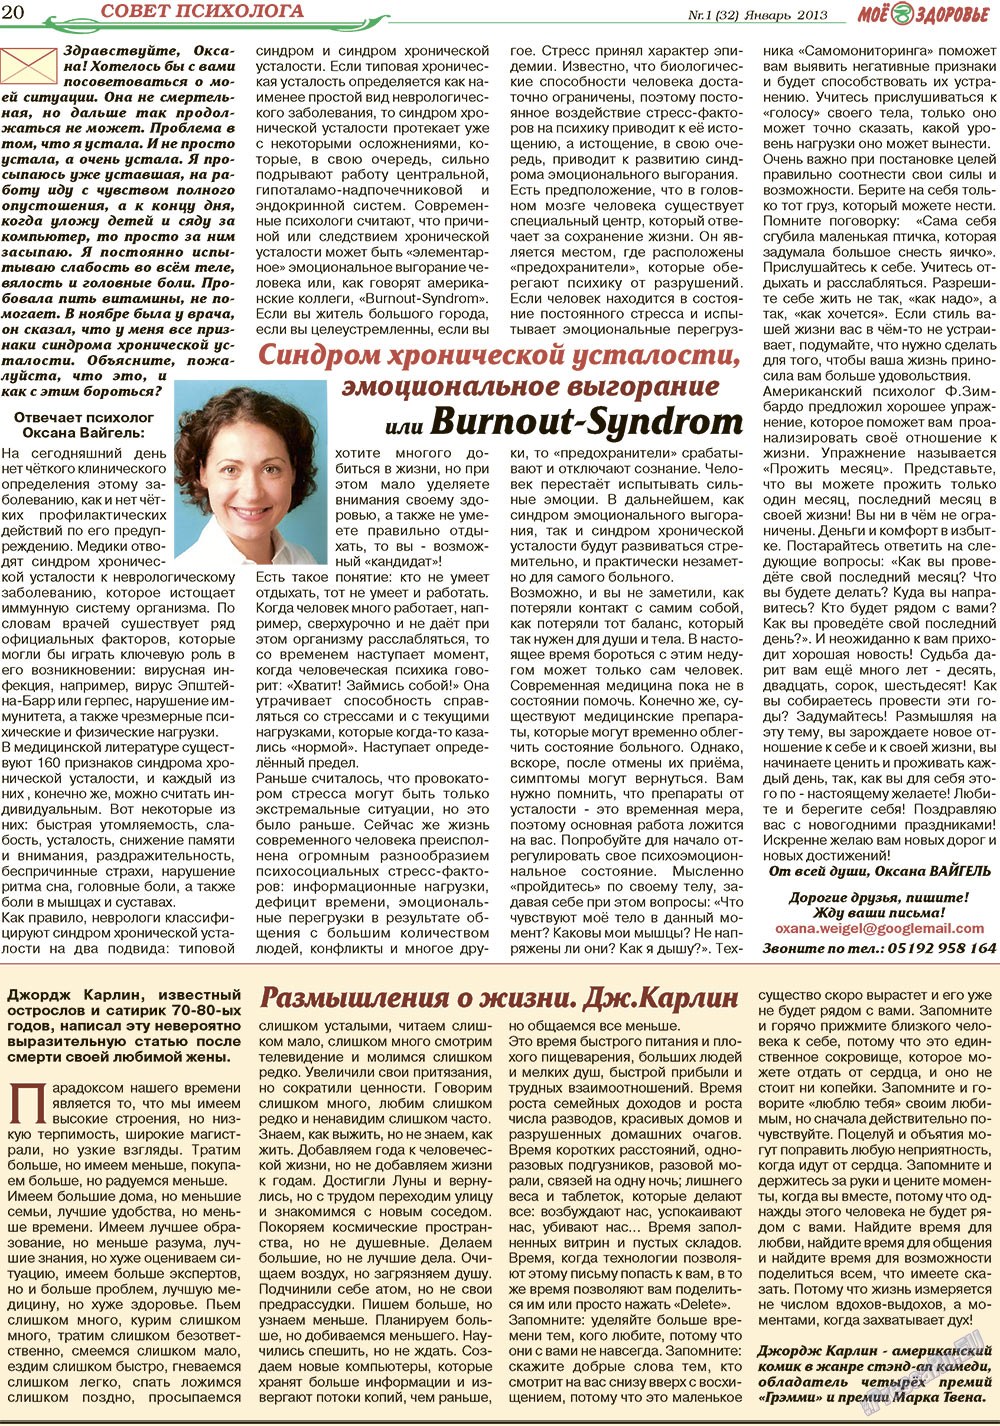 Кругозор, газета. 2013 №1 стр.20